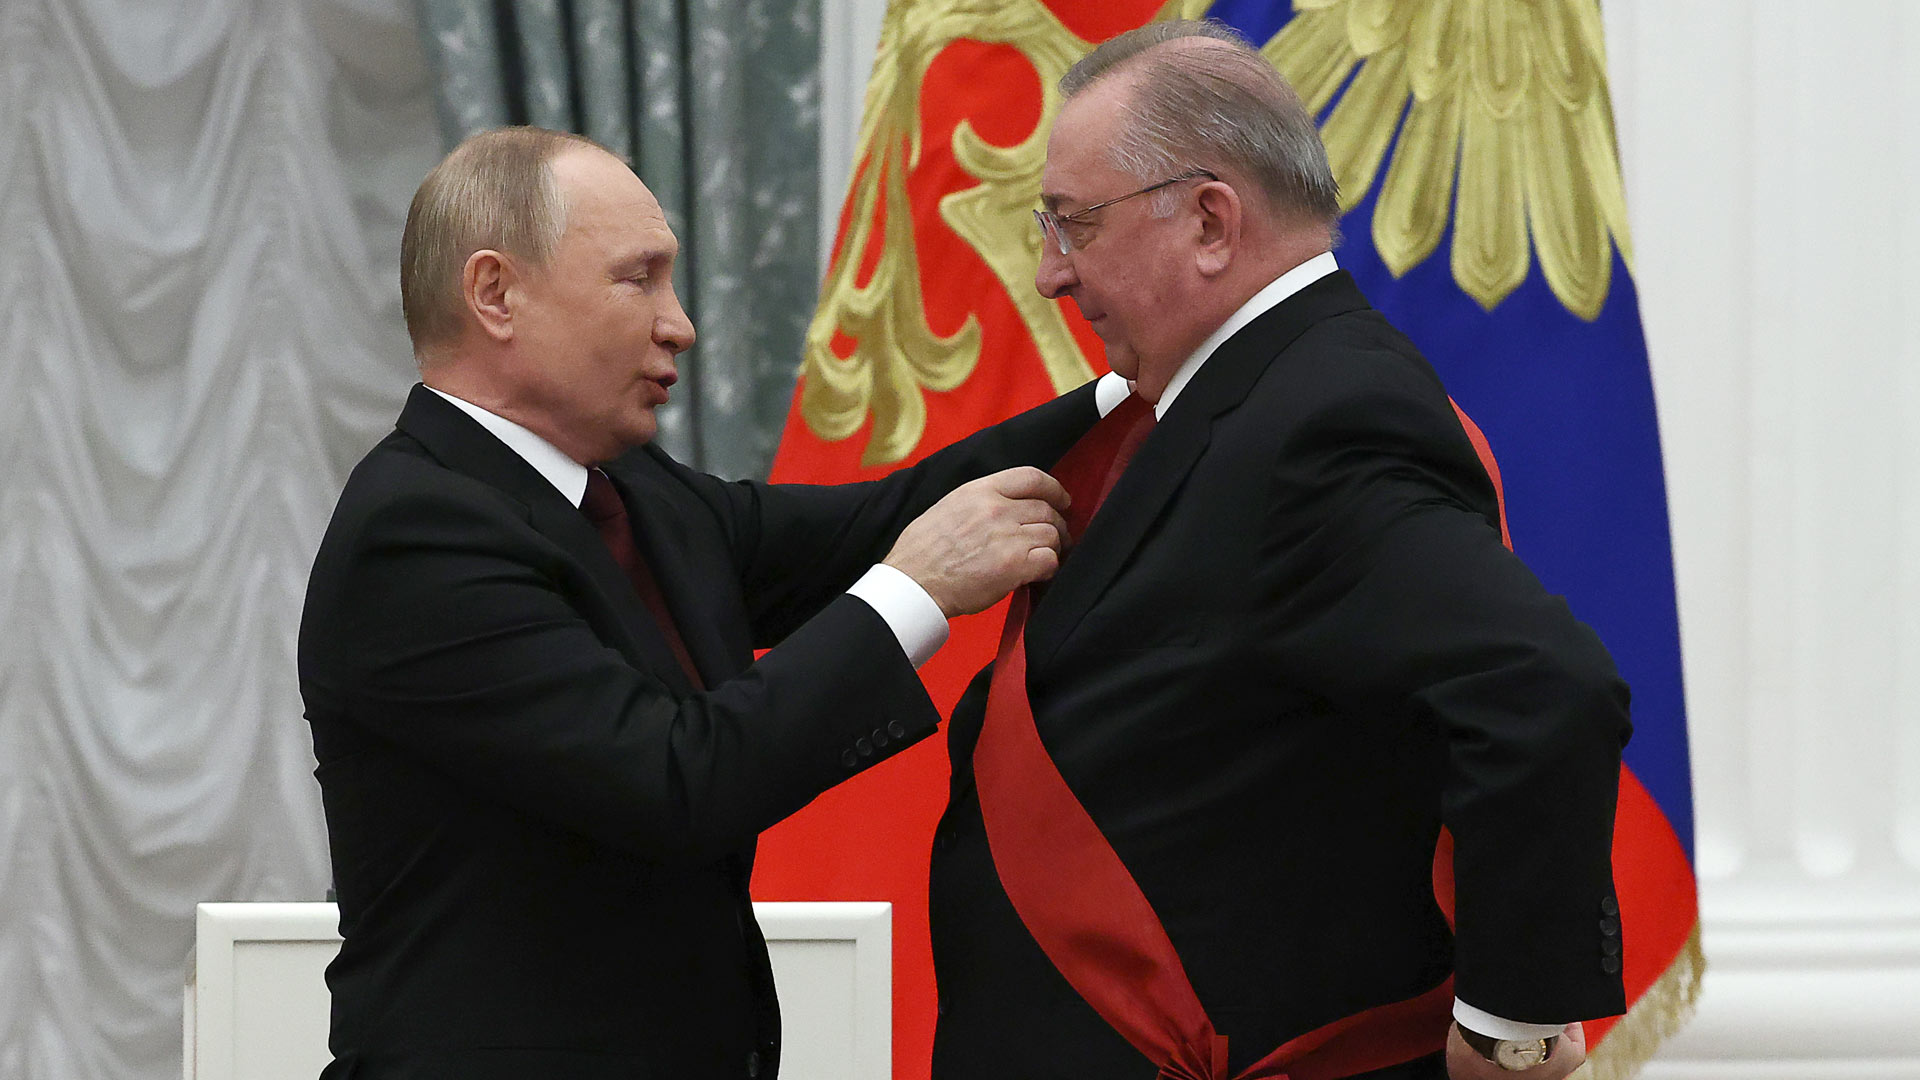 Präsident Wladimir Putin verleiht Transneft-Präsident Nikolai Tokarev den Verdienstorden für das Vaterland (1. Klasse)  | picture alliance/dpa/TASS